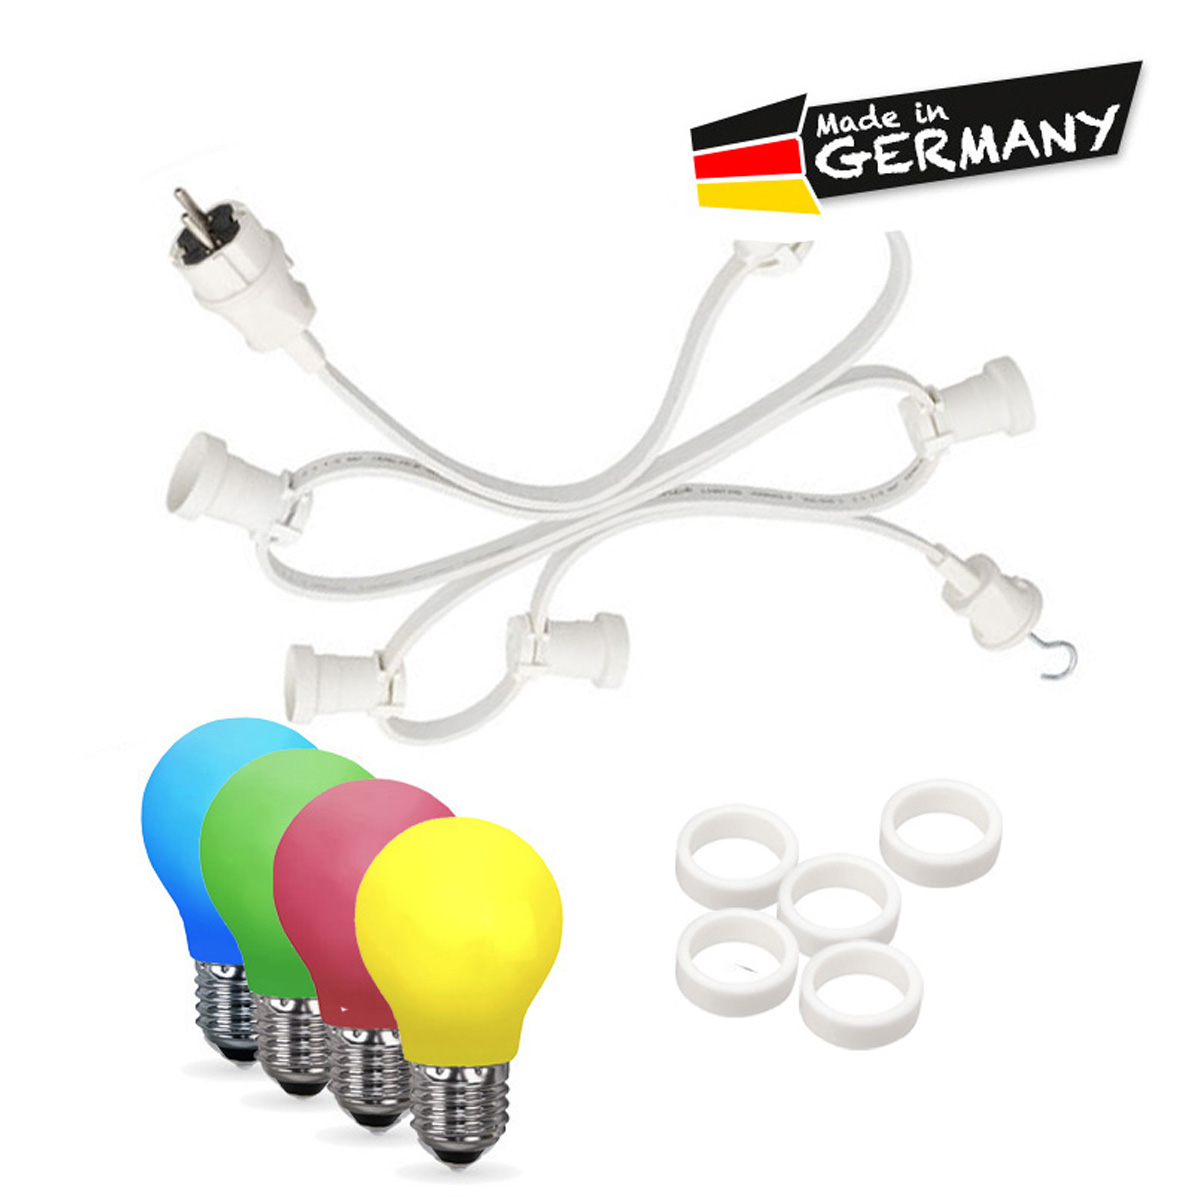 Illu-/Partylichterkette 10m | Außenlichterkette weiß | Made in Germany | 30 x bunte LED Tropfenlampe